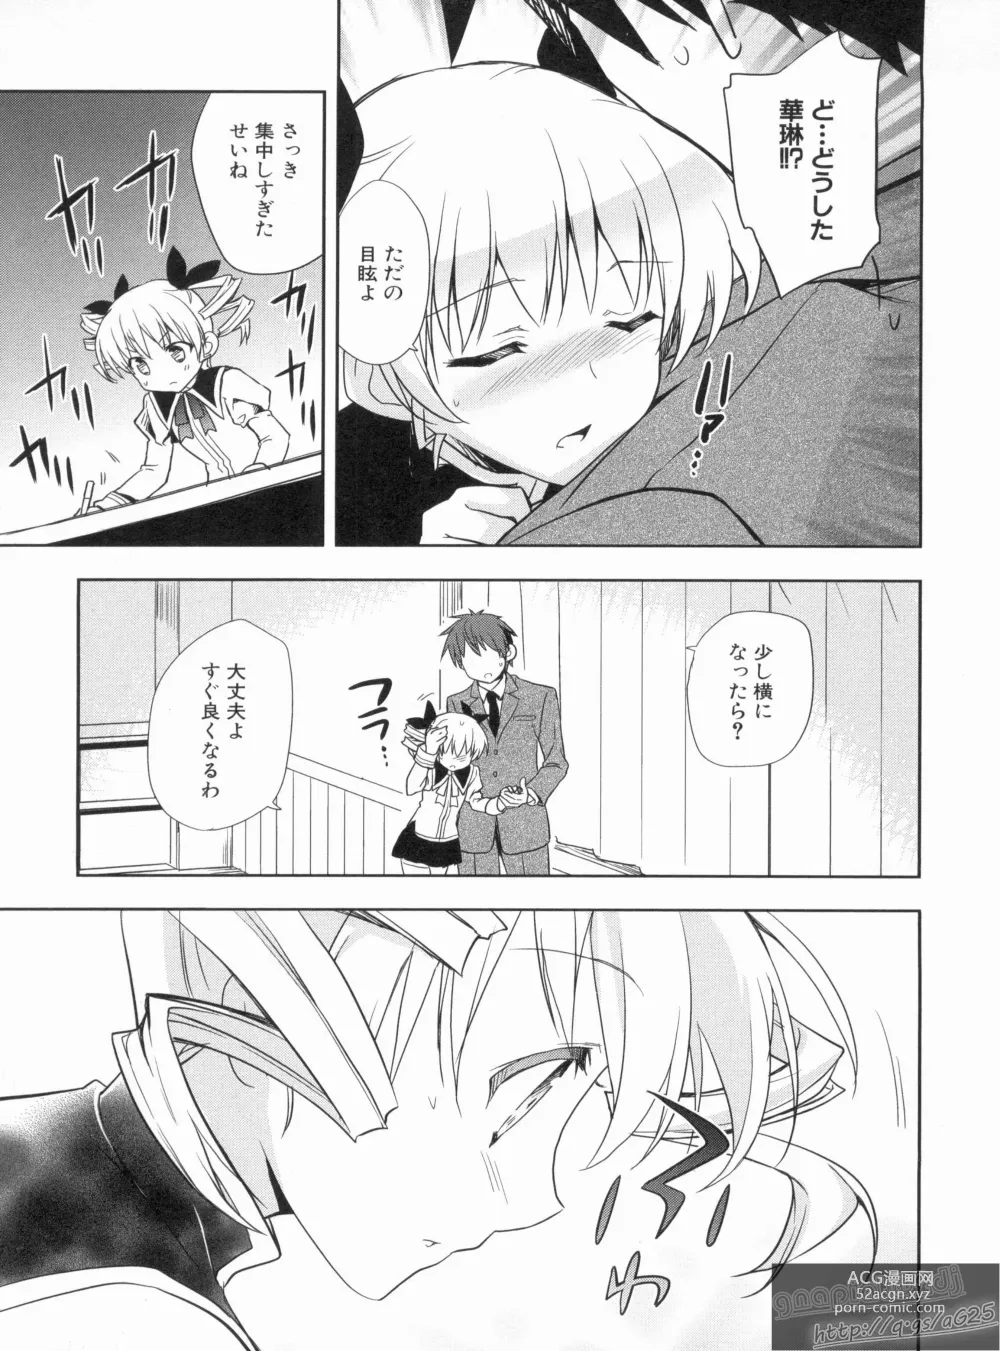 Page 23 of manga Shin Koihime Musou Gaishi Saiten VOL.3